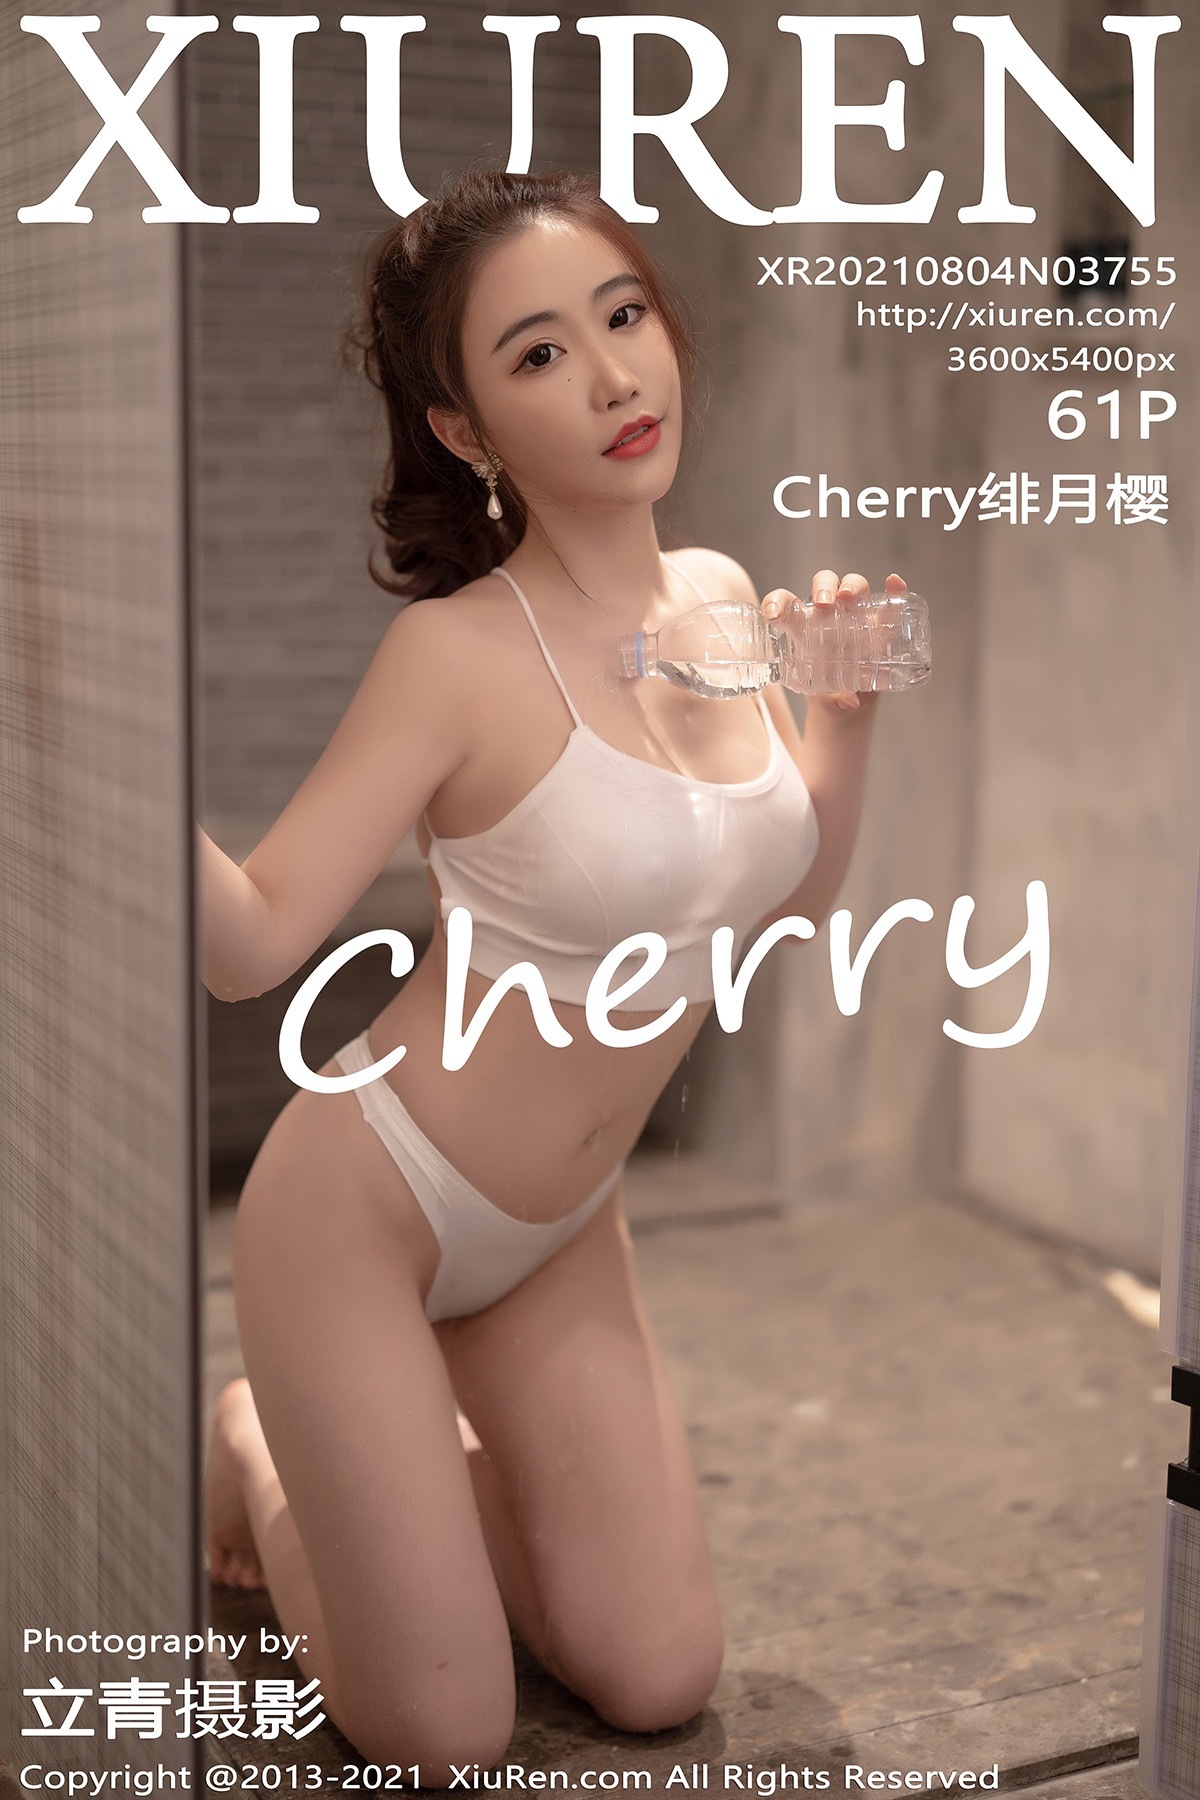 XIUREN XIUREN 2021.08.04 No.3755 Cherry Cherry